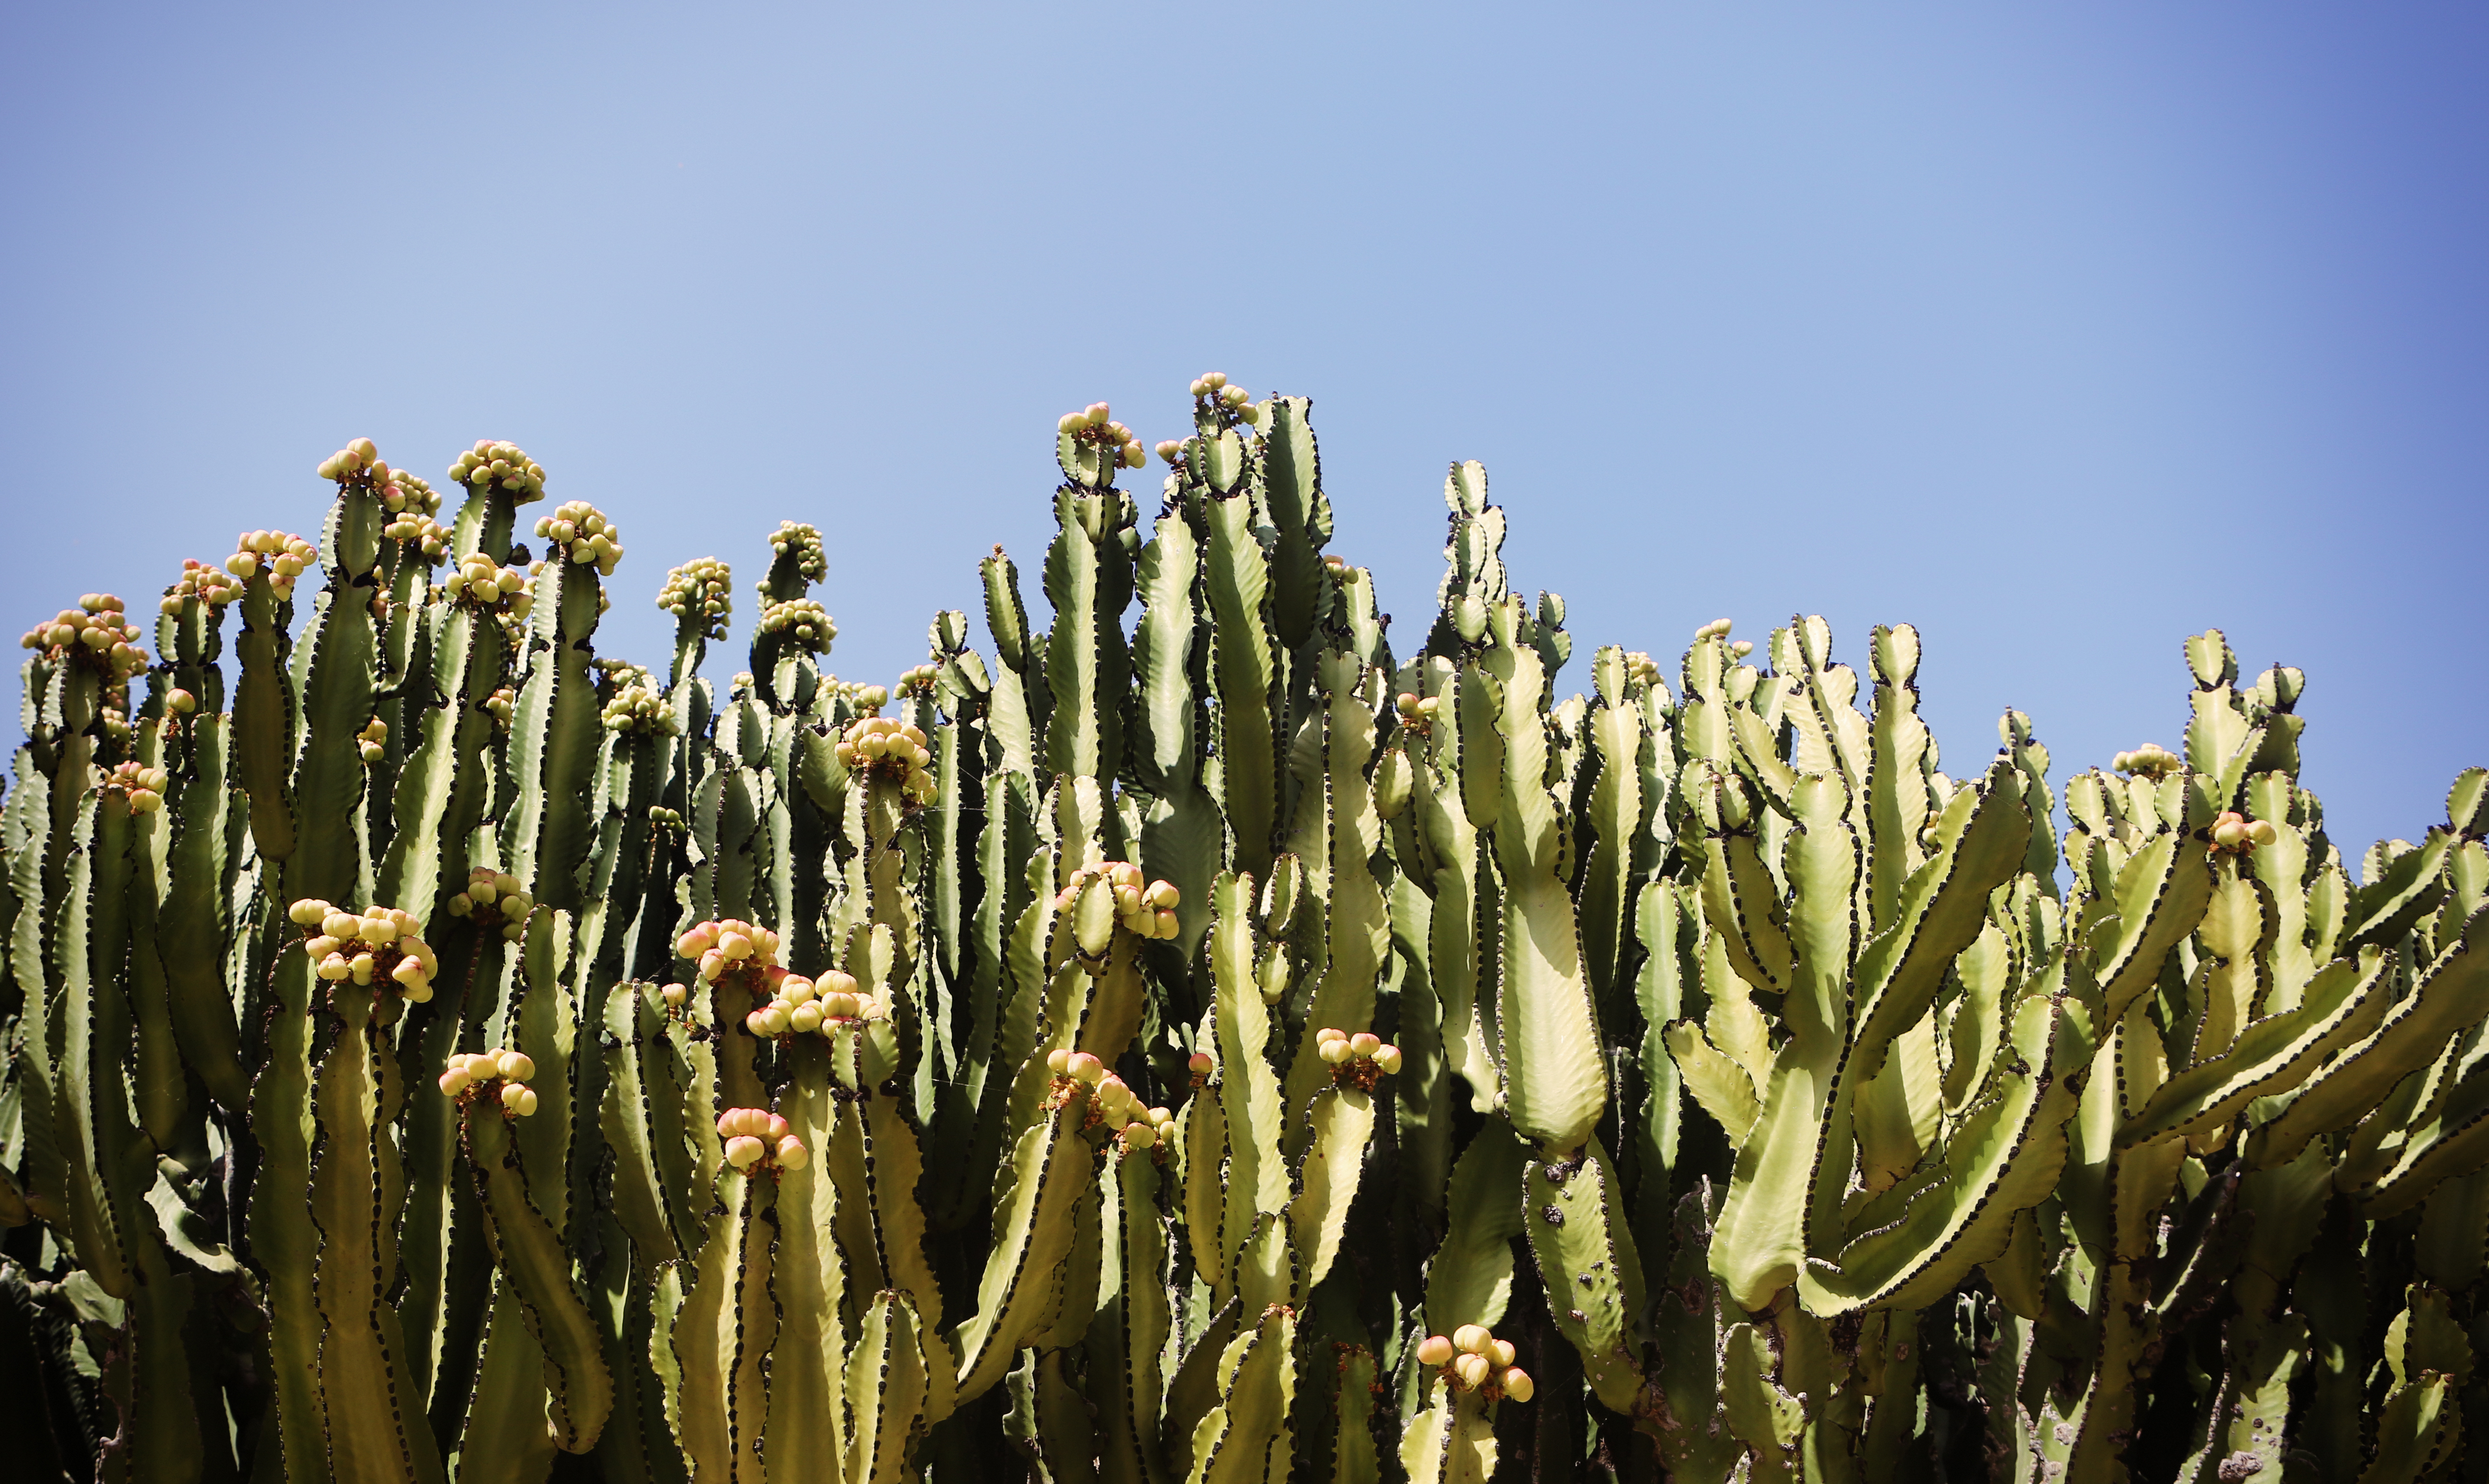 Cactus - Free Stock Photos | Life of Pix